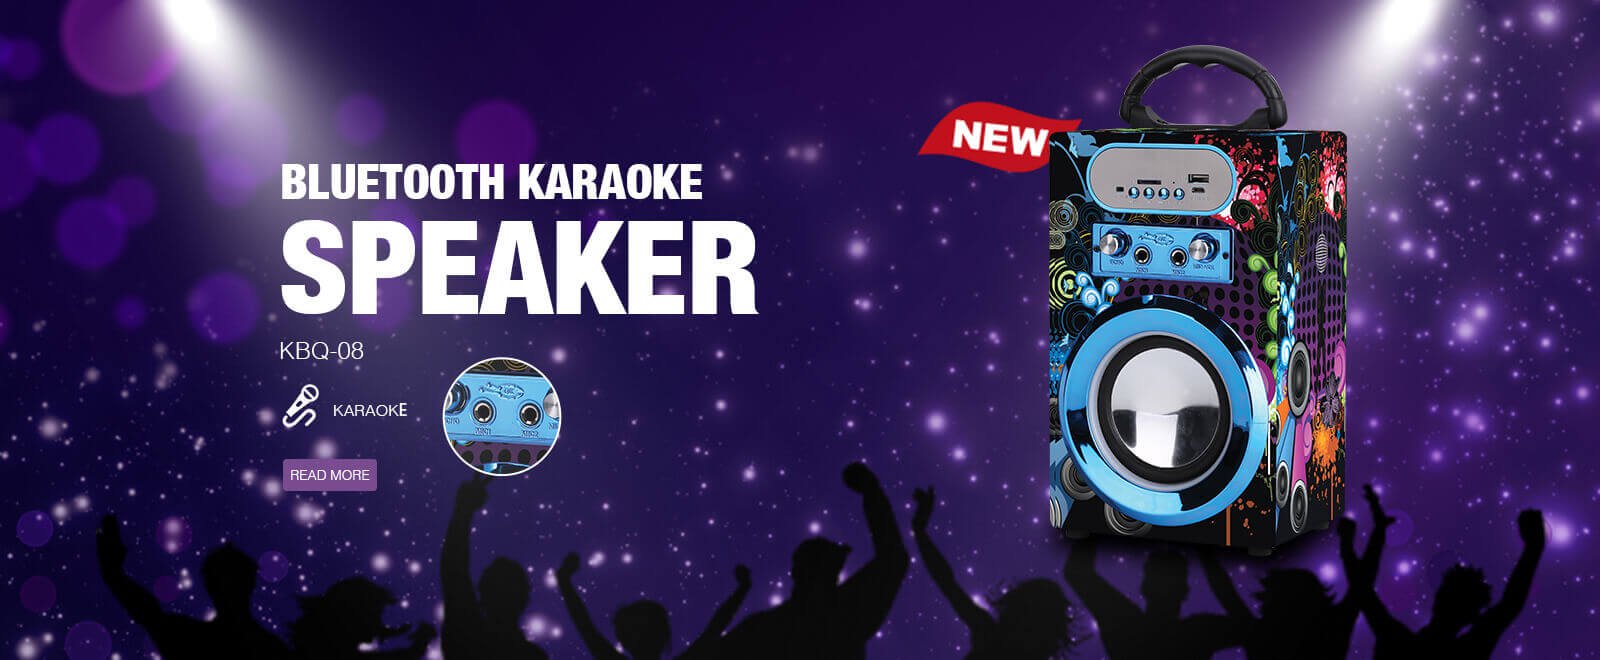 Mini Bluetooth Karaoke Speaker With LED Light